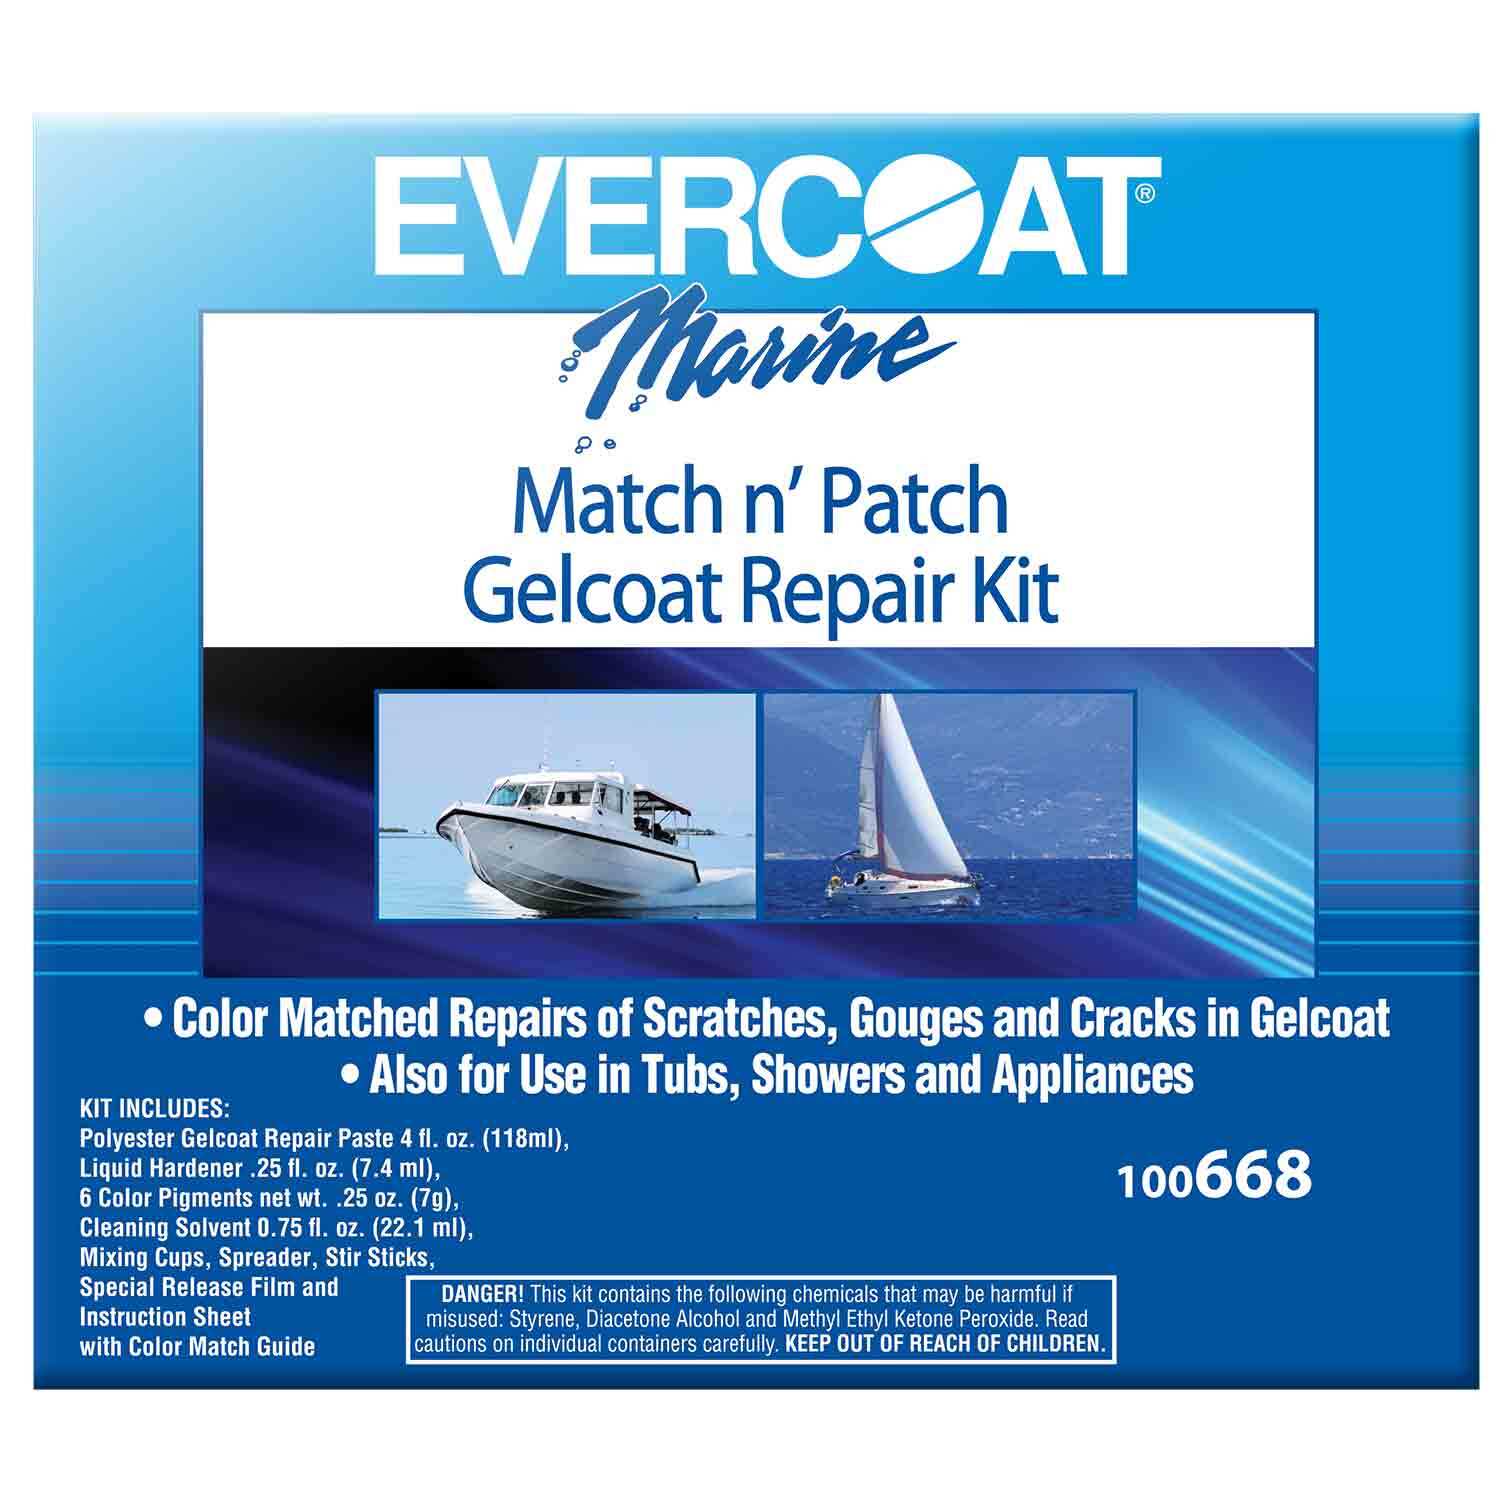 EVERCOAT Match n' Patch Gelcoat Repair Kit